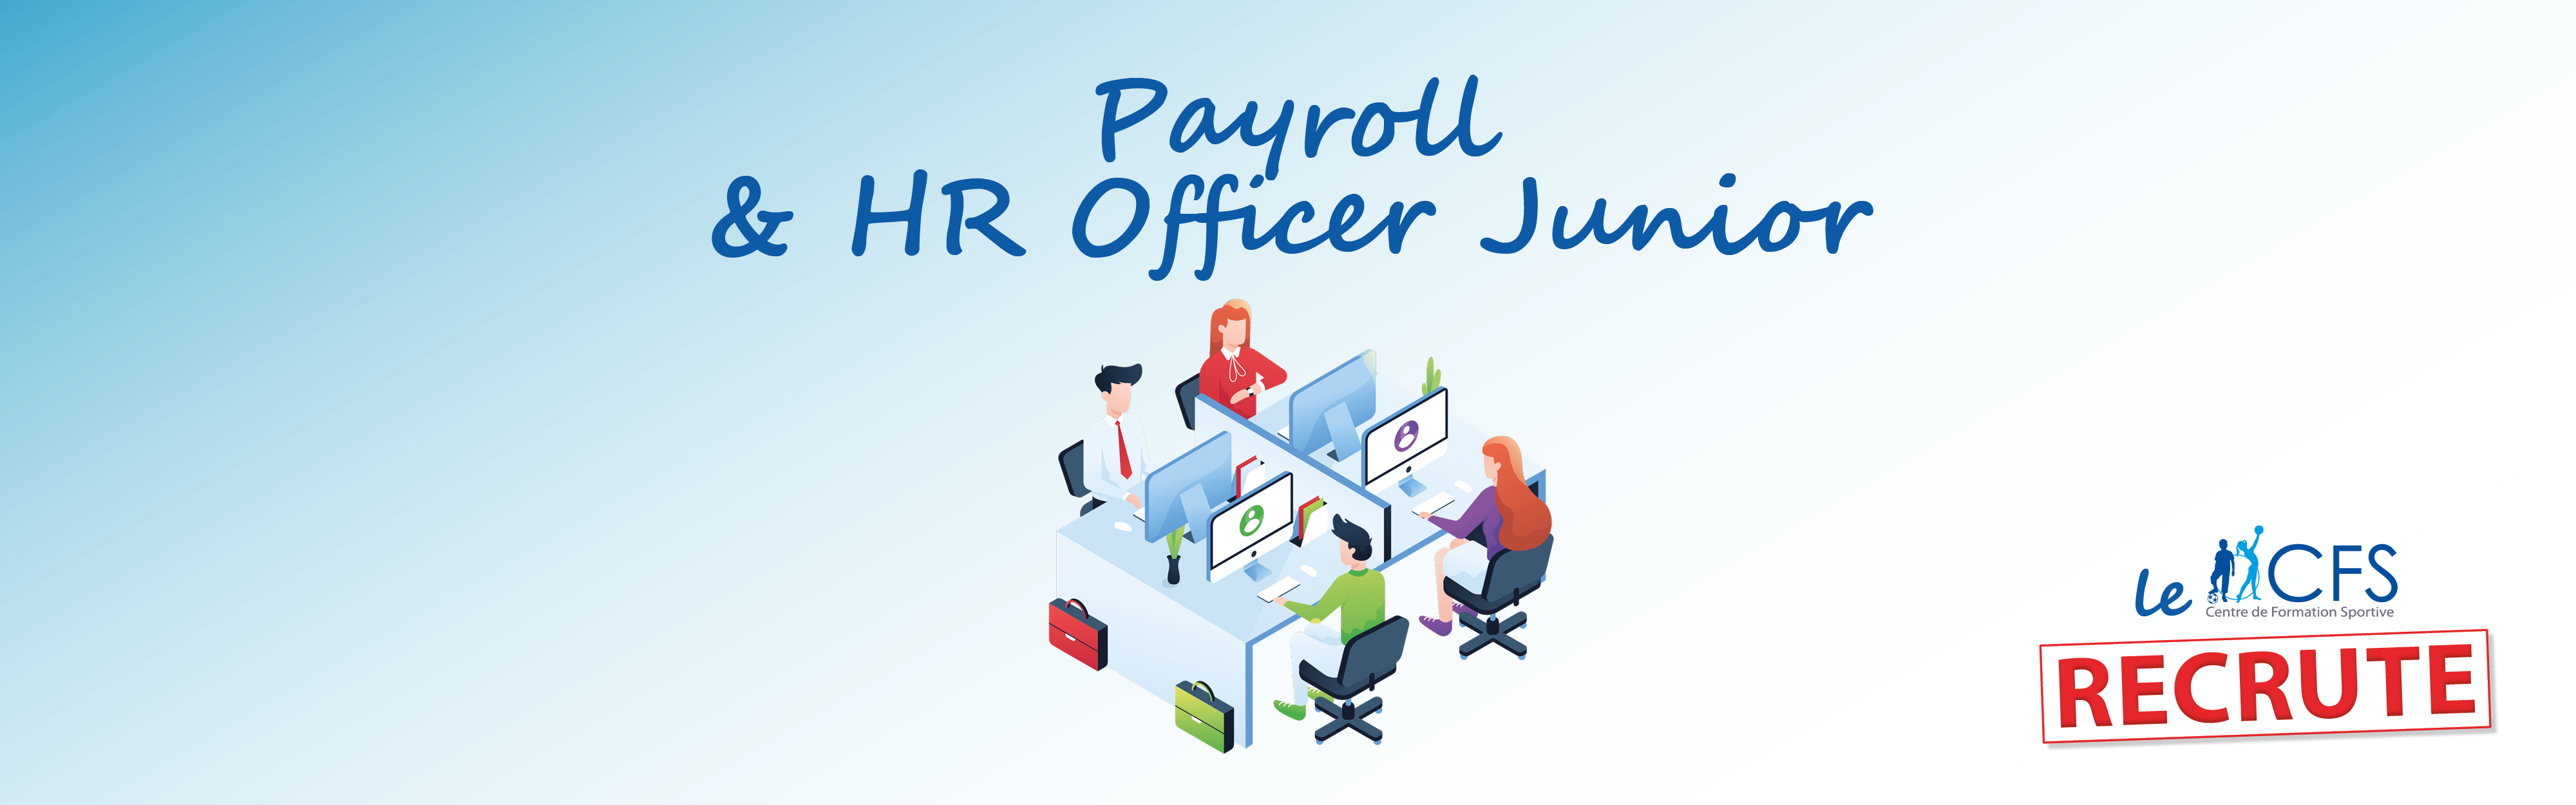 Payroll & HR Officer Junior